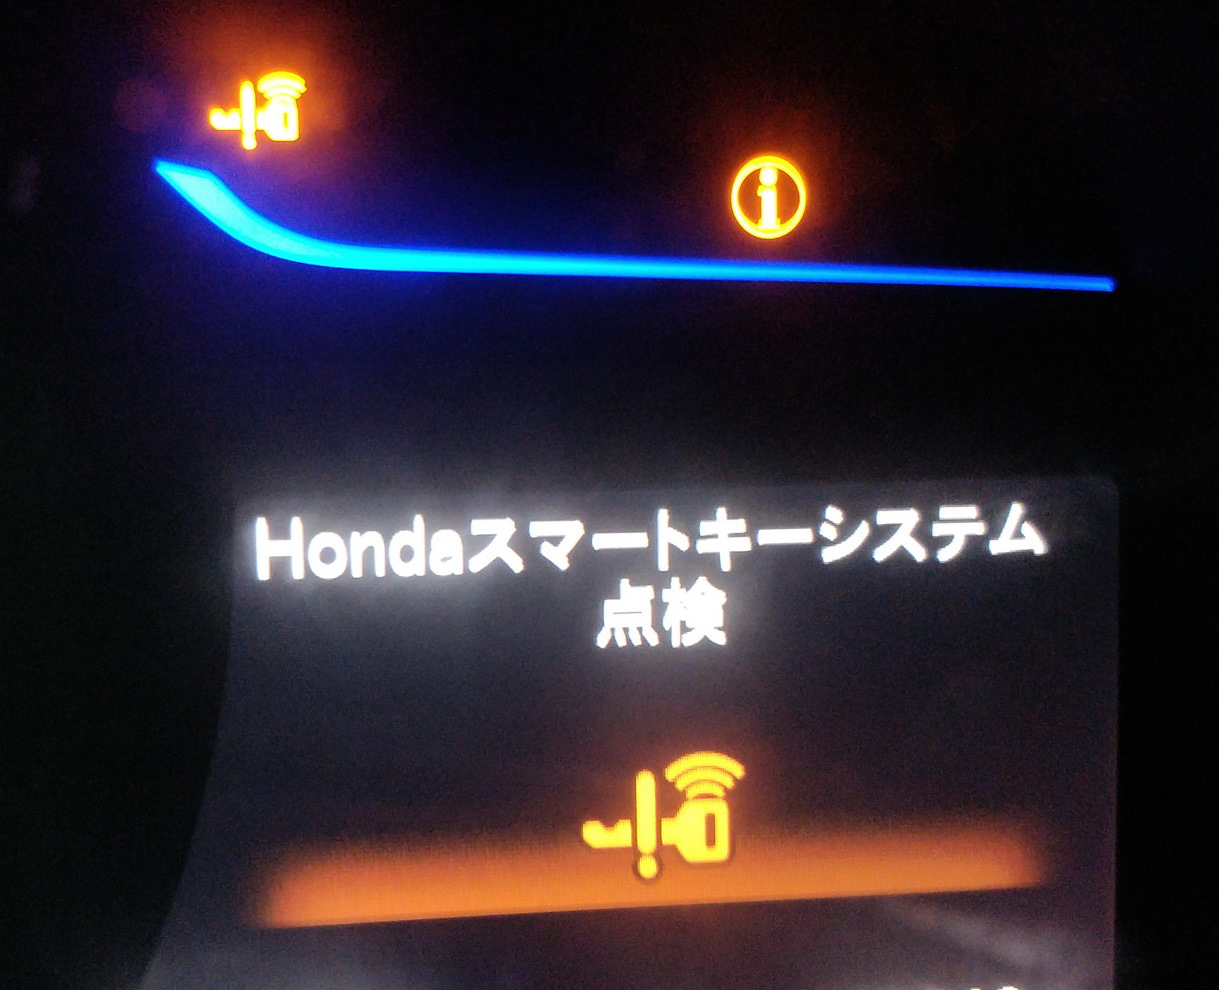 Honda fit ошибки. Значки приборной панели Honda inspire cc2. Honda freed 2011 лампочки на панели приборов. Значки на панели Хонда фит гибрид. Датчики значки на панели Honda Fit 2002.